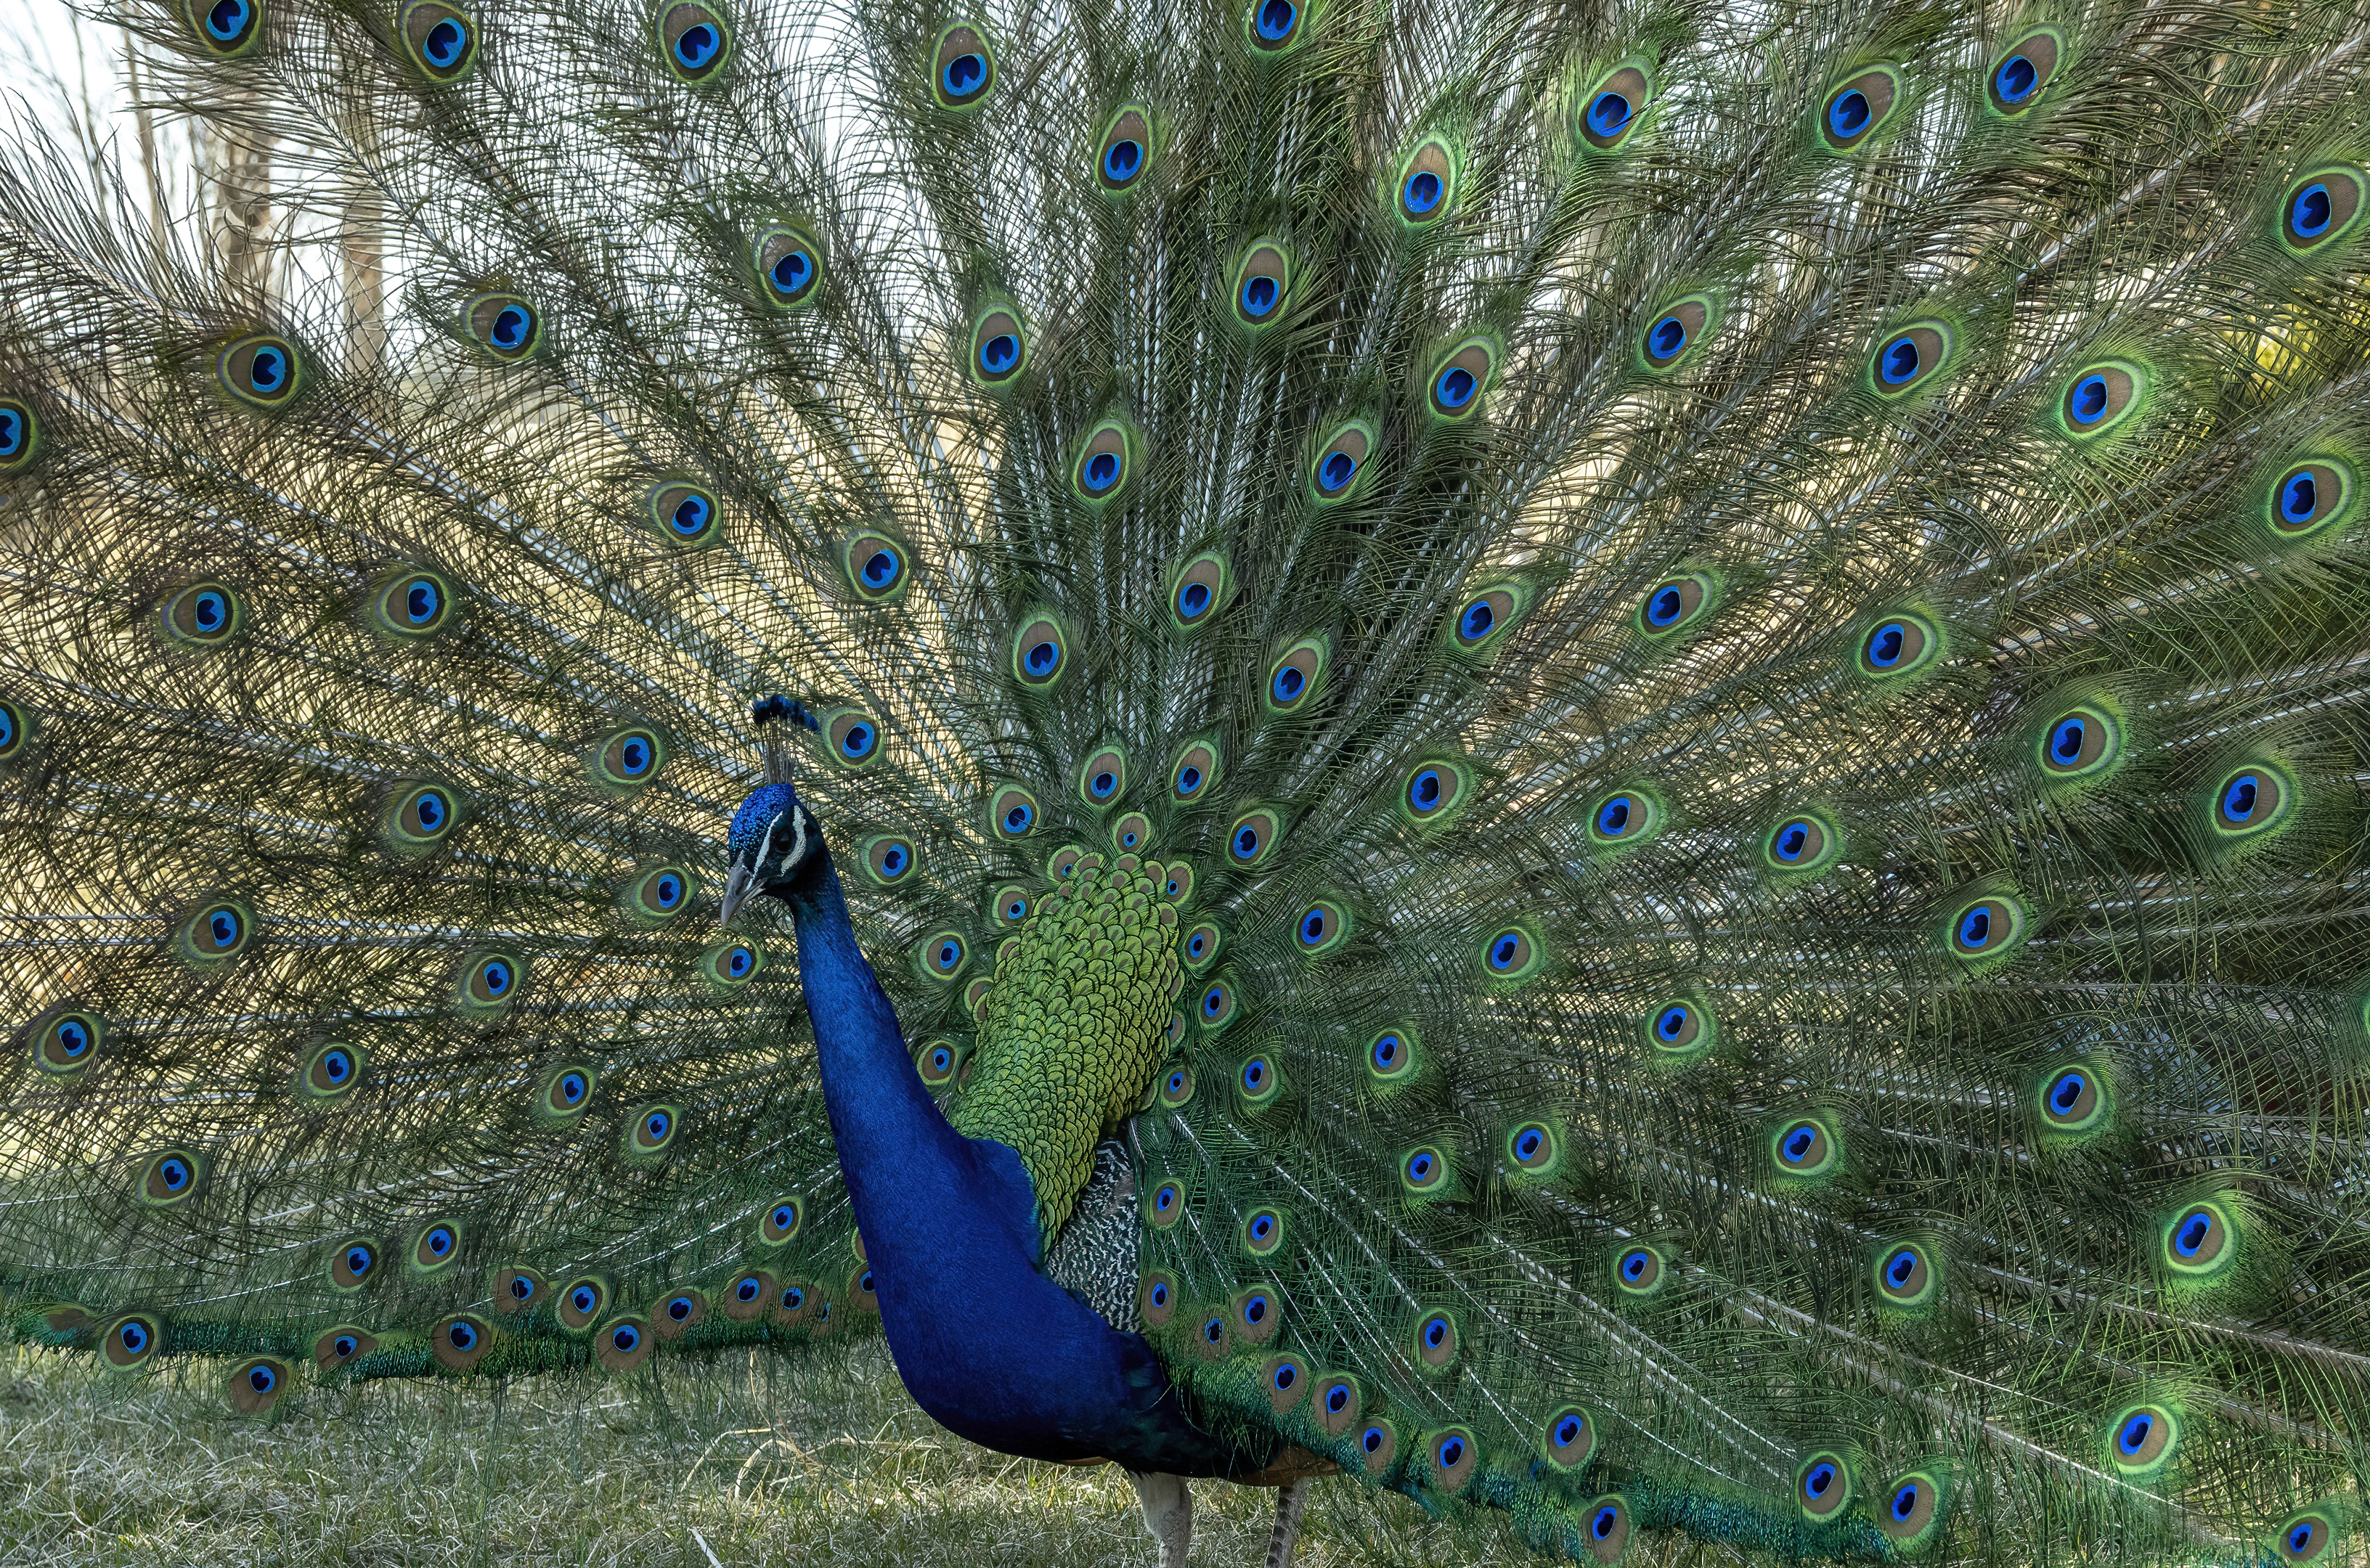 Petersen Rock Garden peacock bend oregon-denoise